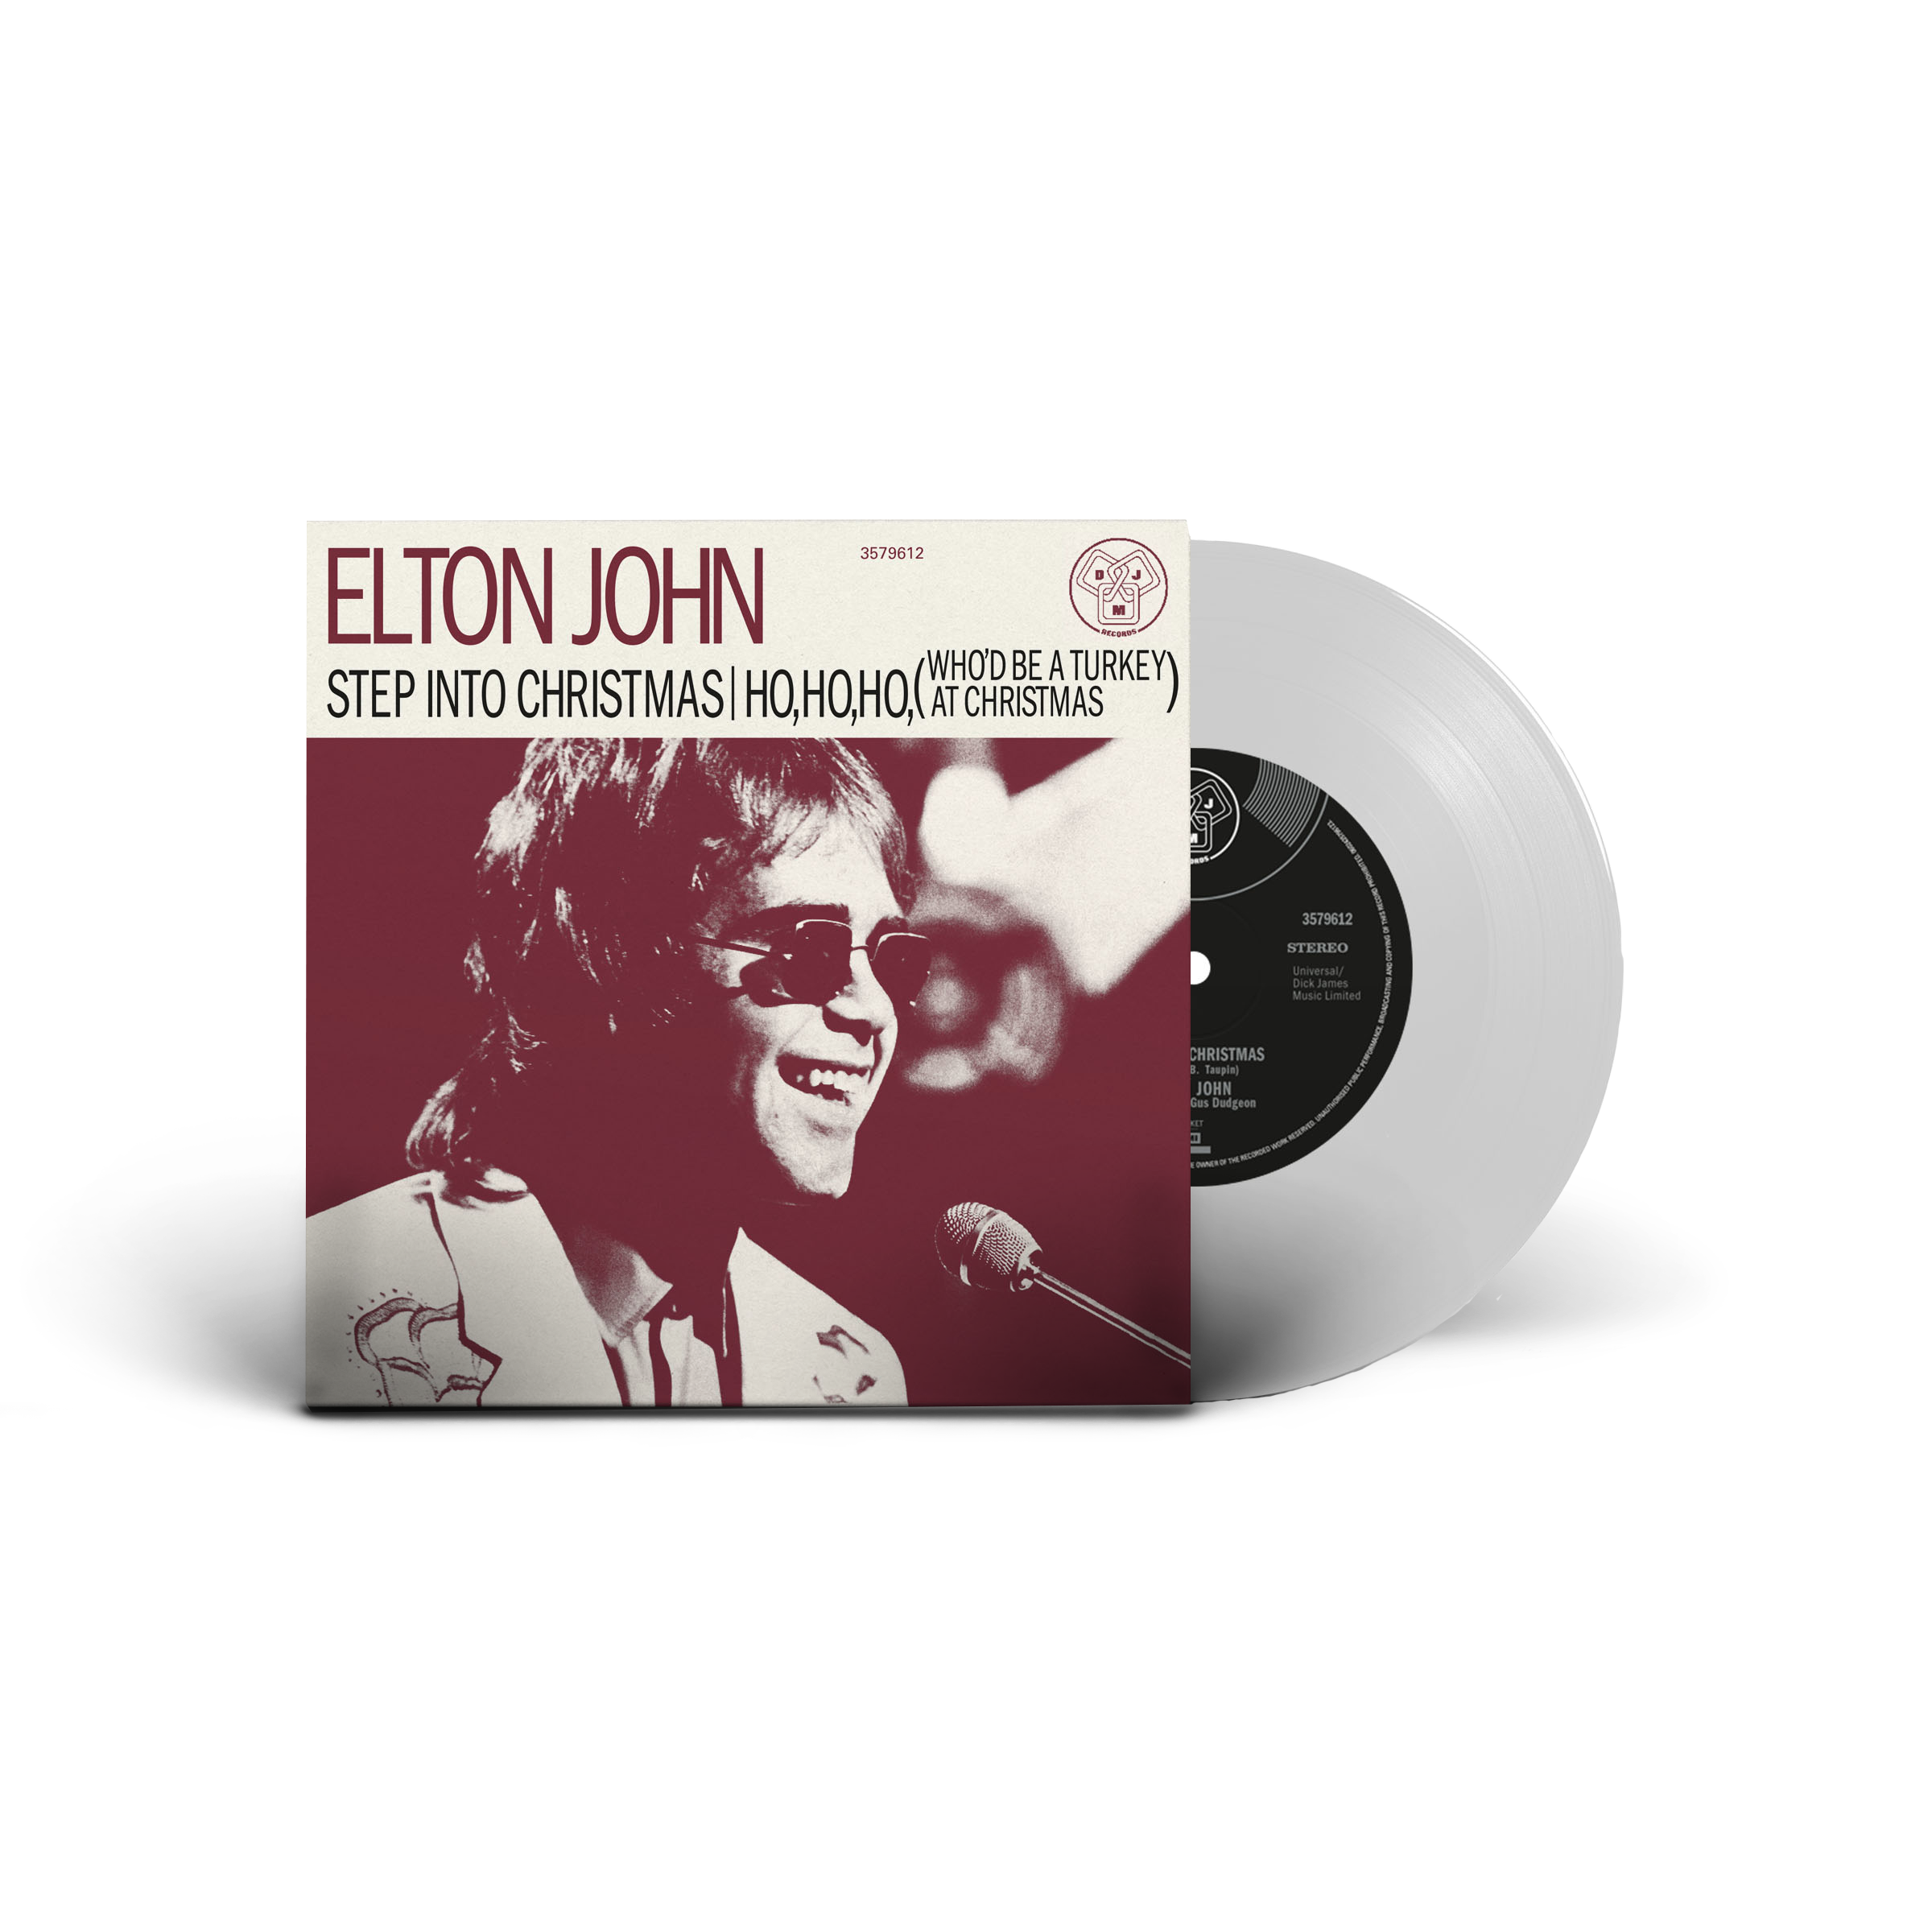 Elton John - Step Into Christmas: White Vinyl 12" Single